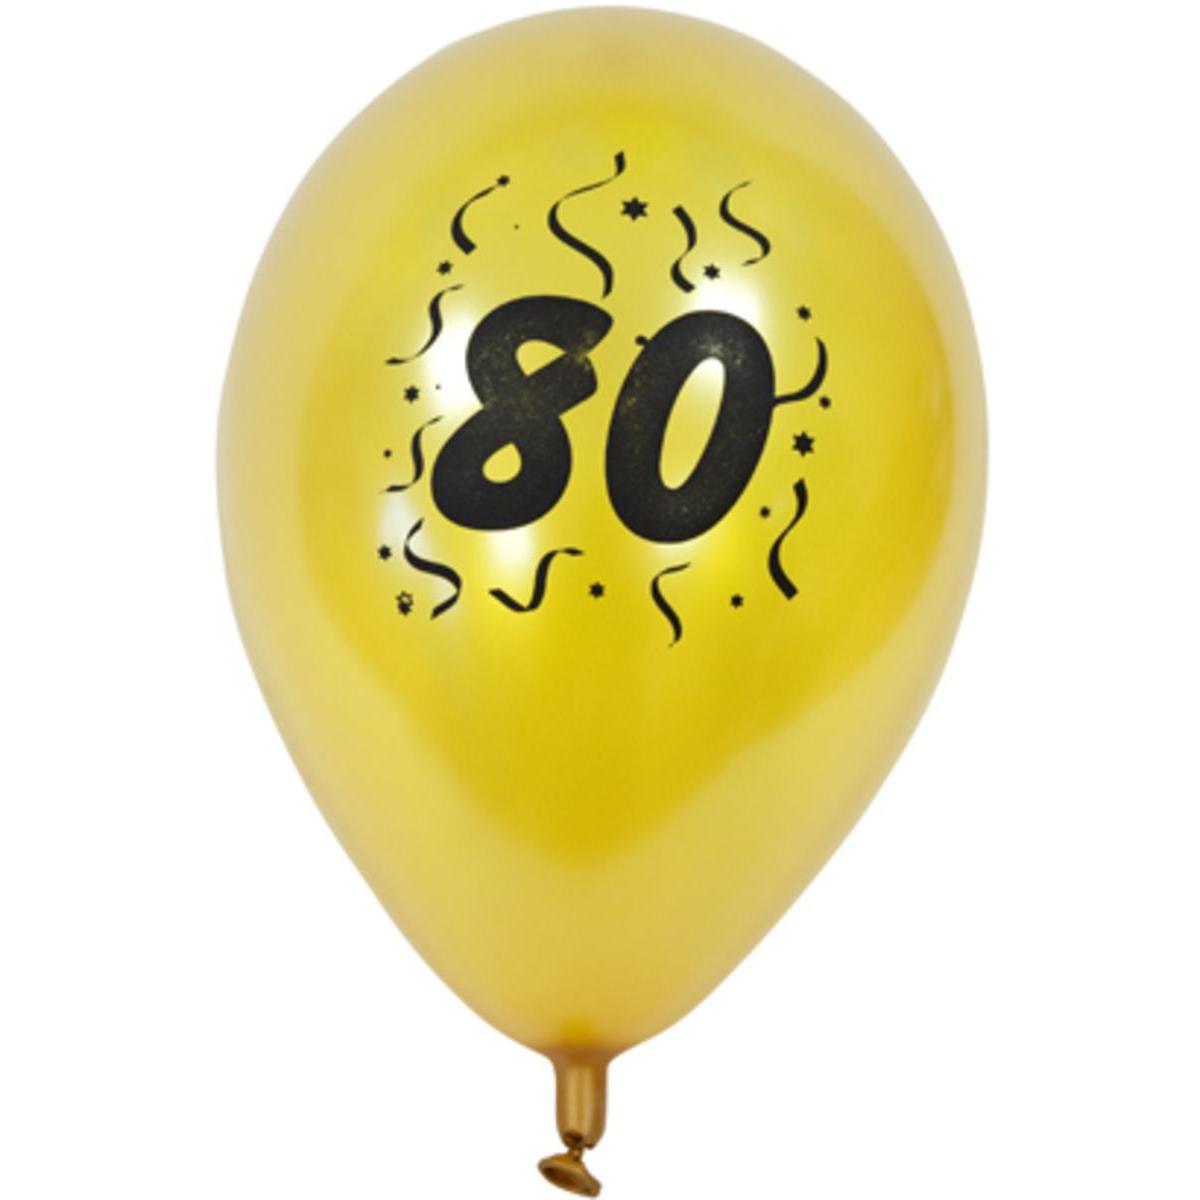 Ballons nacrés imprimés 80 ans (x 8) - 28 x 28 cm - Or